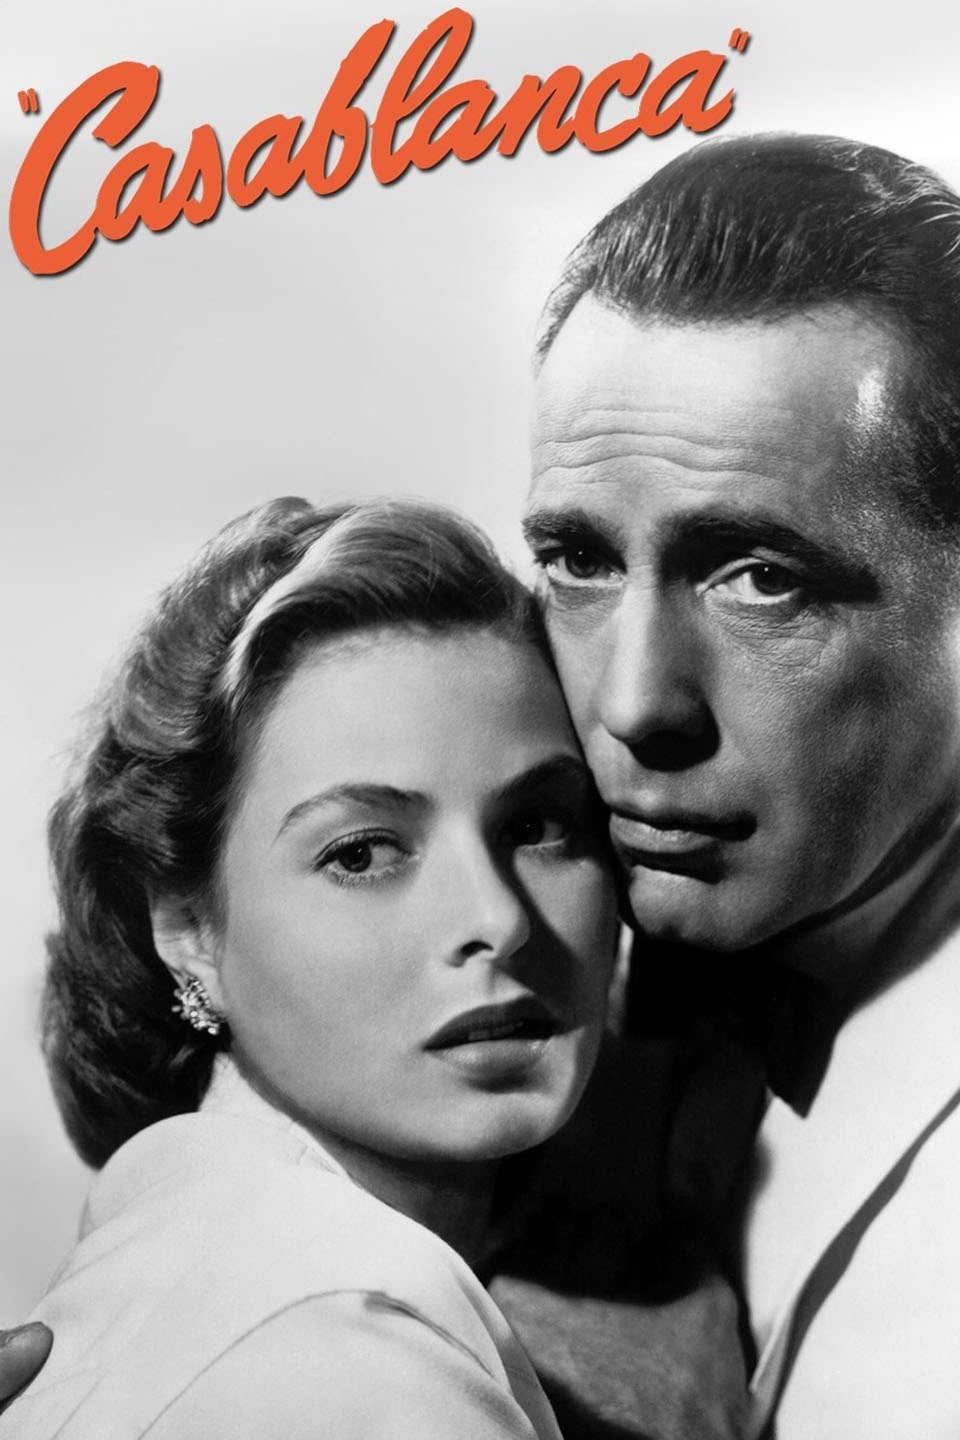 Casablanca in ddr porno Casablanca